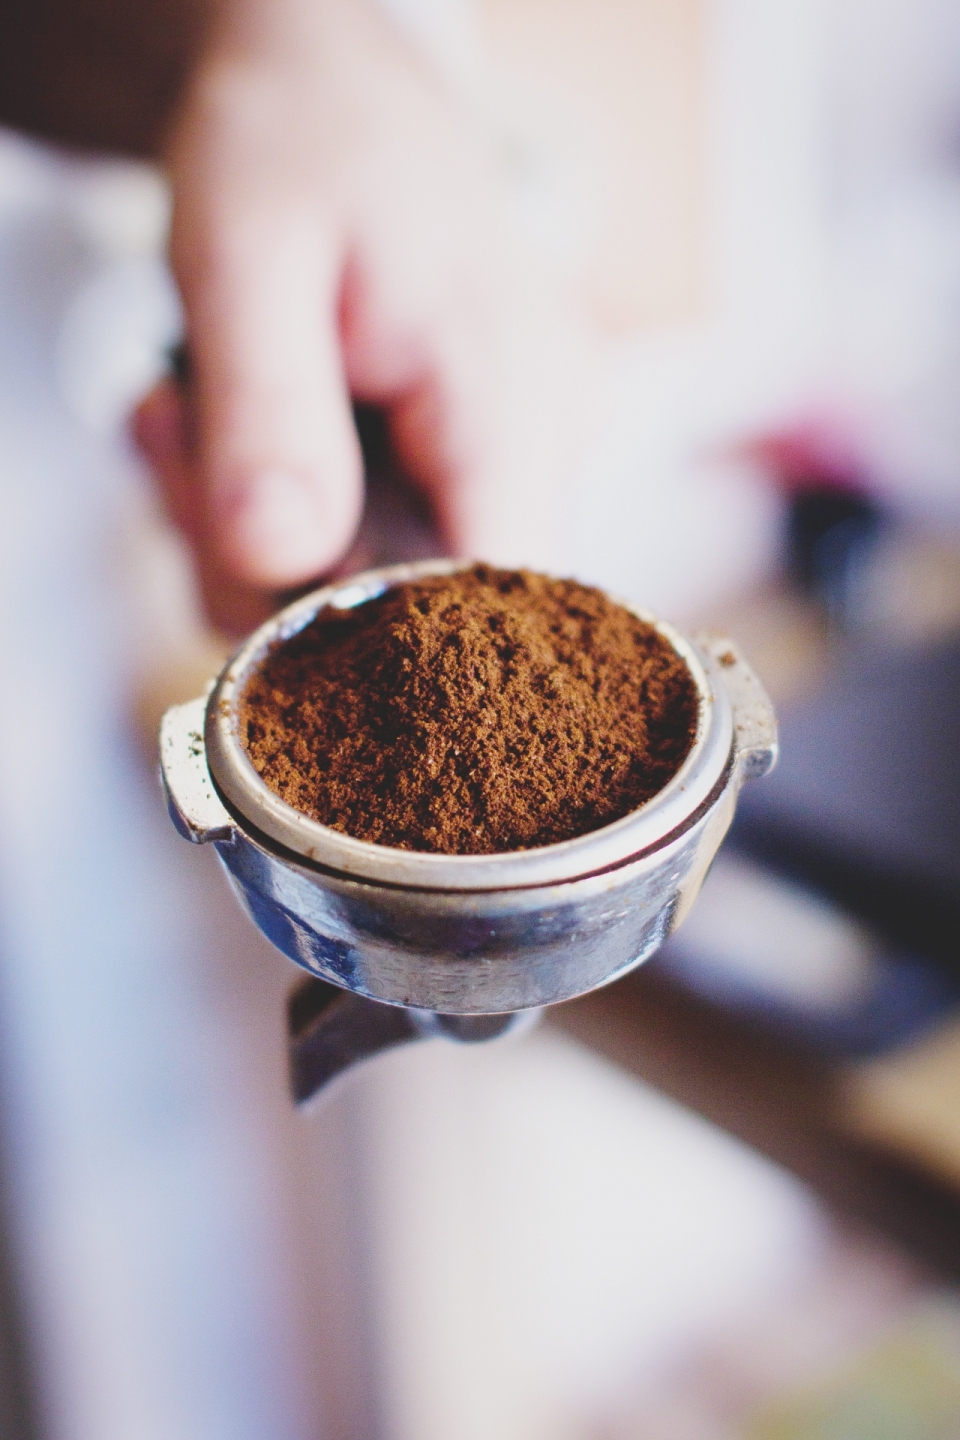 放在器械中精细研磨的咖啡粉